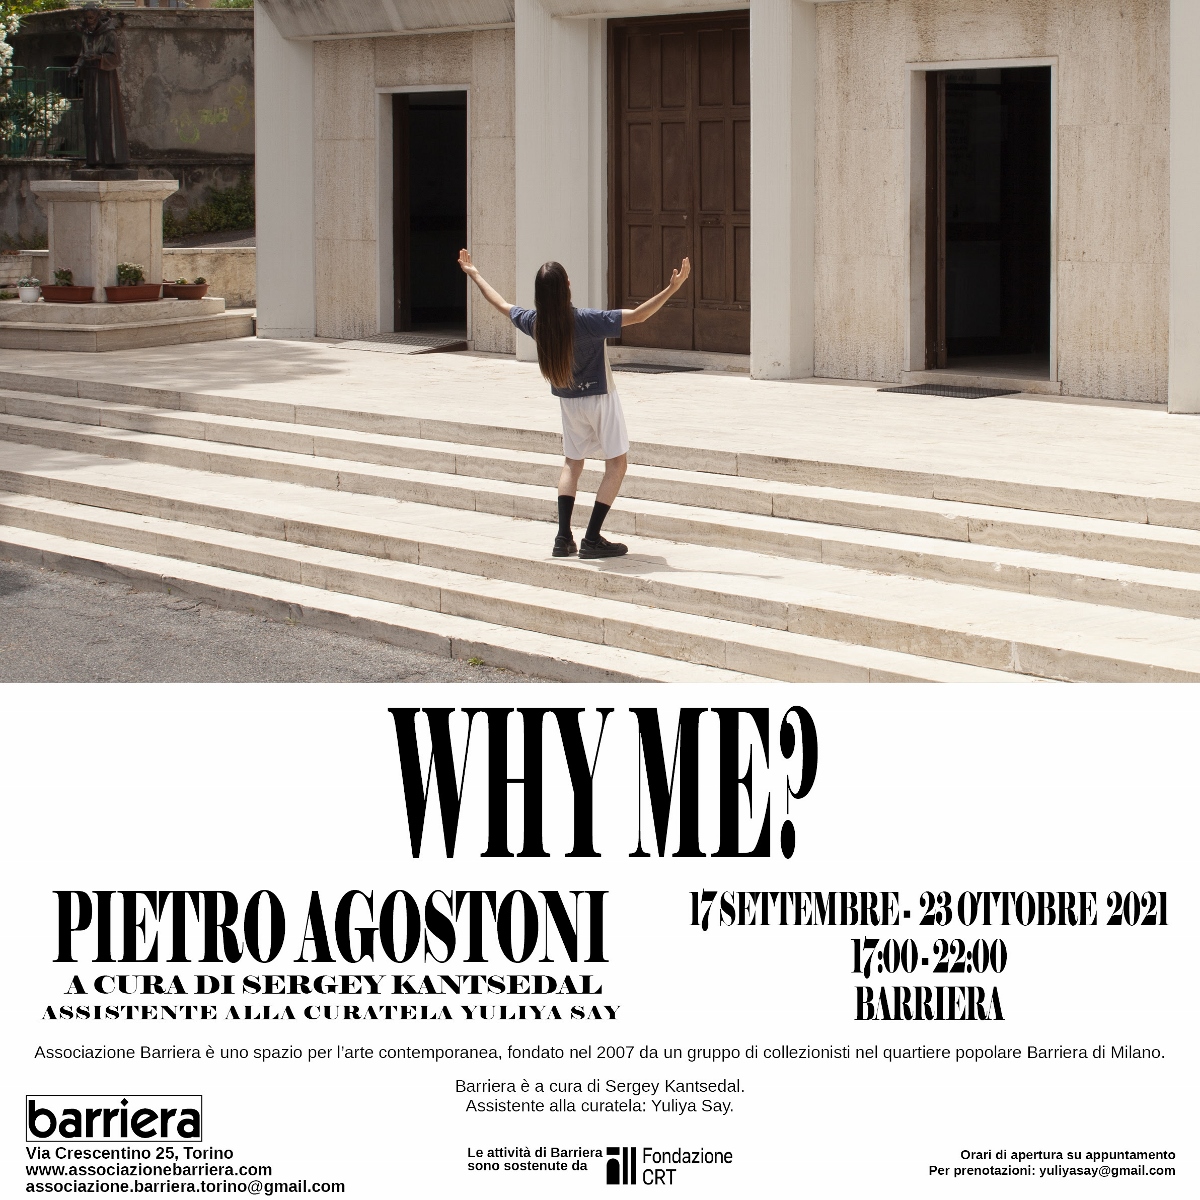 Pietro Agostoni - Why Me?